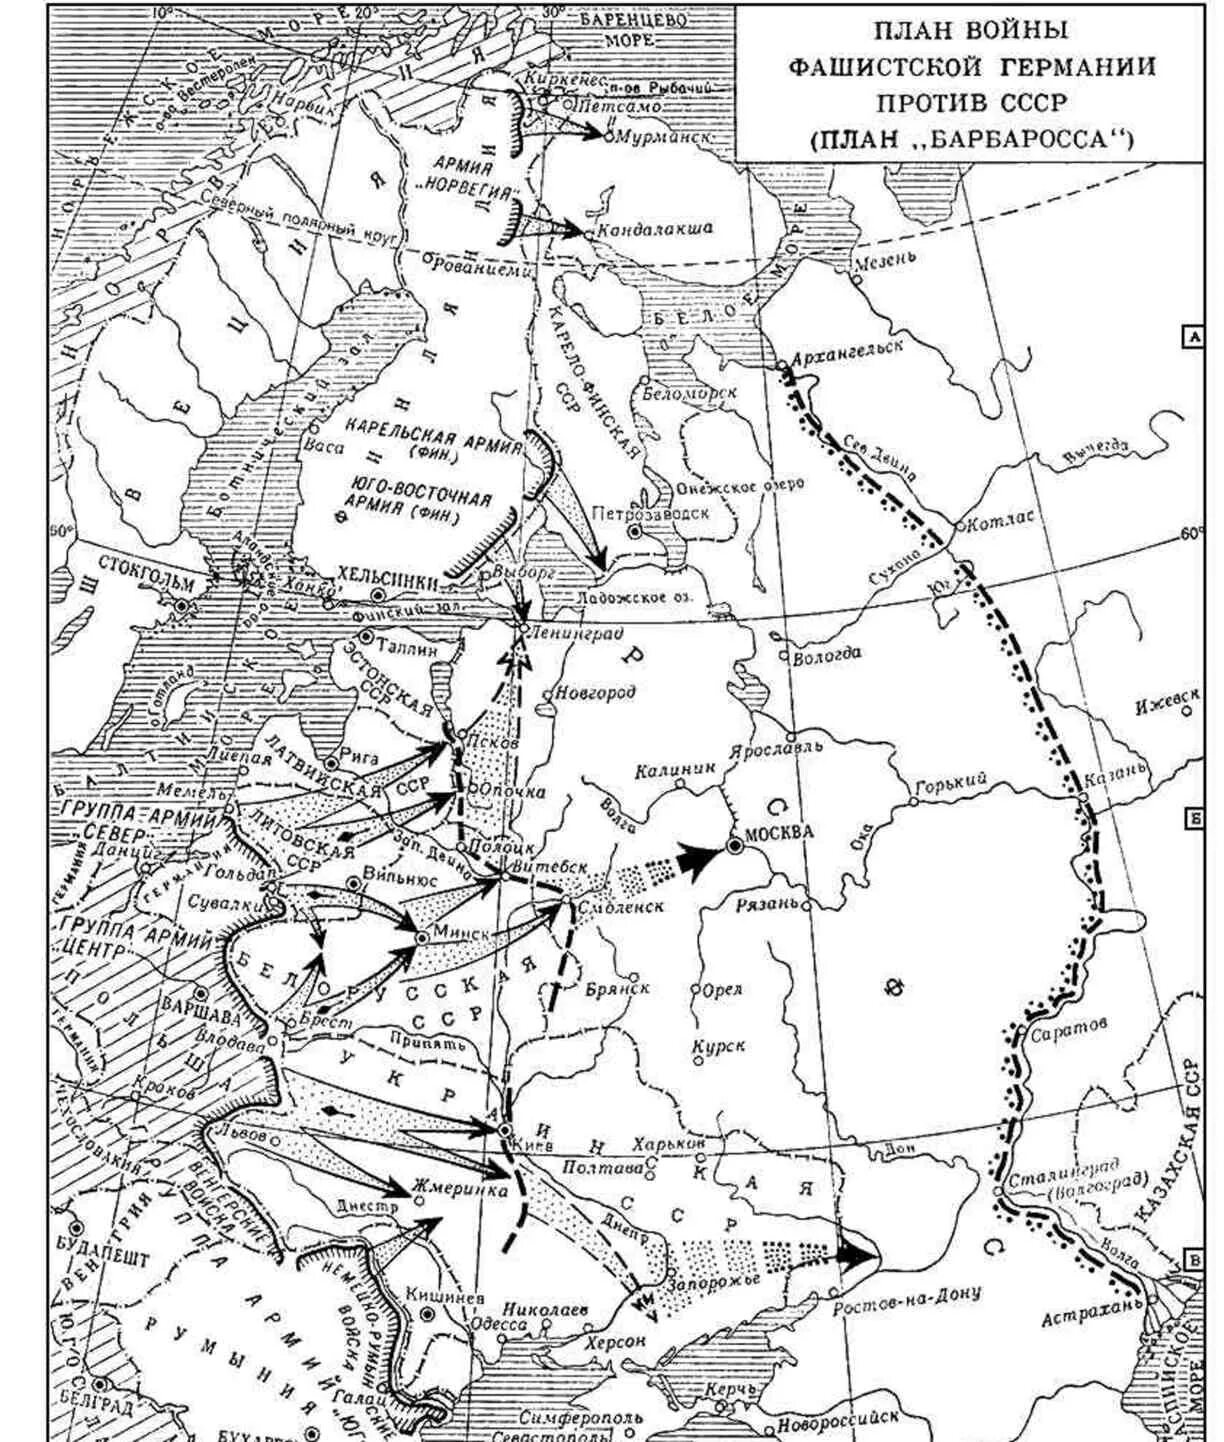 Карта 2 мировой войны план Барбаросса. План Барбаросса карта 1941. Карта ВОВ план Барбаросса. Напишите название плана изображенного на карте